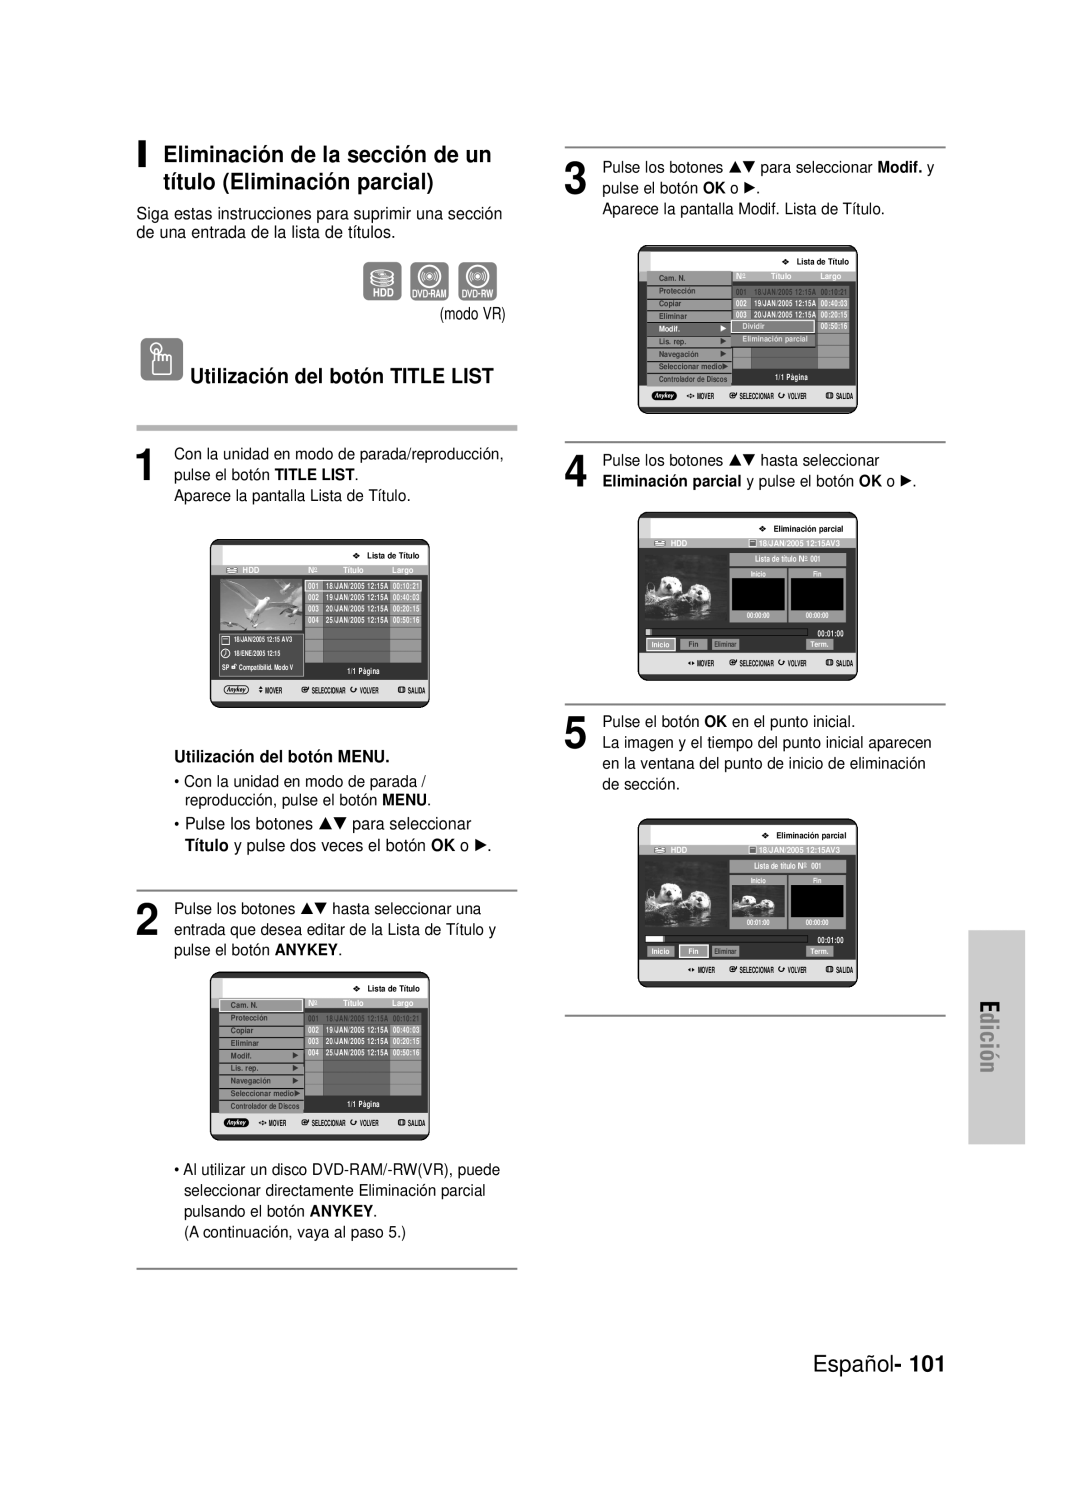 Samsung DVD-HR725/XEO, DVD-HR725/XEG manual Eliminación de la sección de un título Eliminación parcial, Edición, Español 